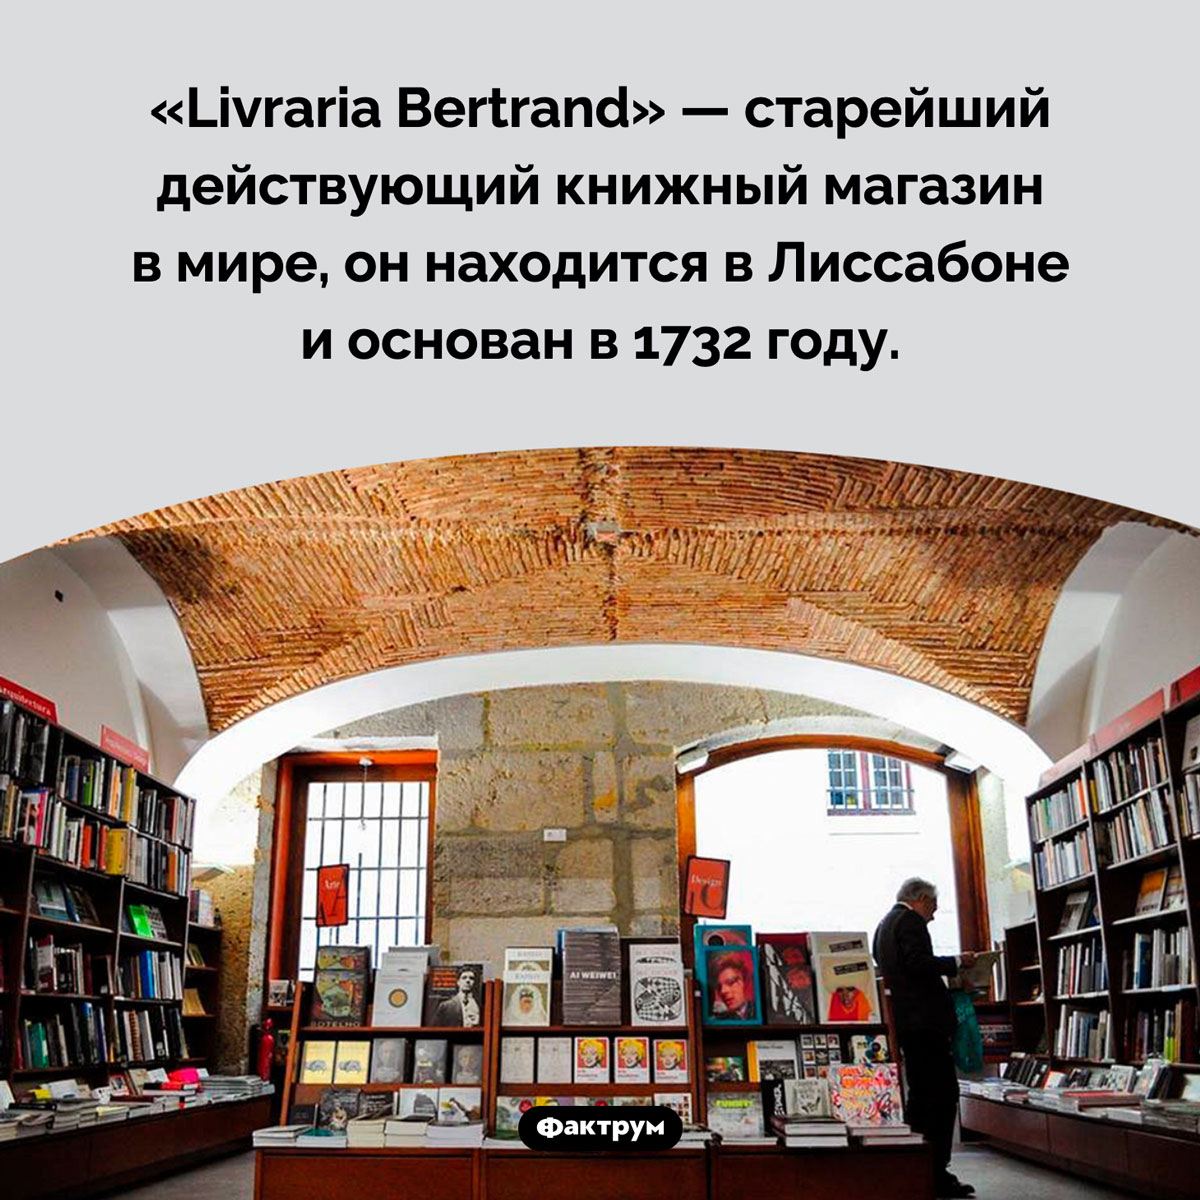 Старейший книжный магазин в мире. «Livraria Bertrand» — старейший действующий книжный магазин в мире, он находится в Лиссабоне и основан в 1732 году.